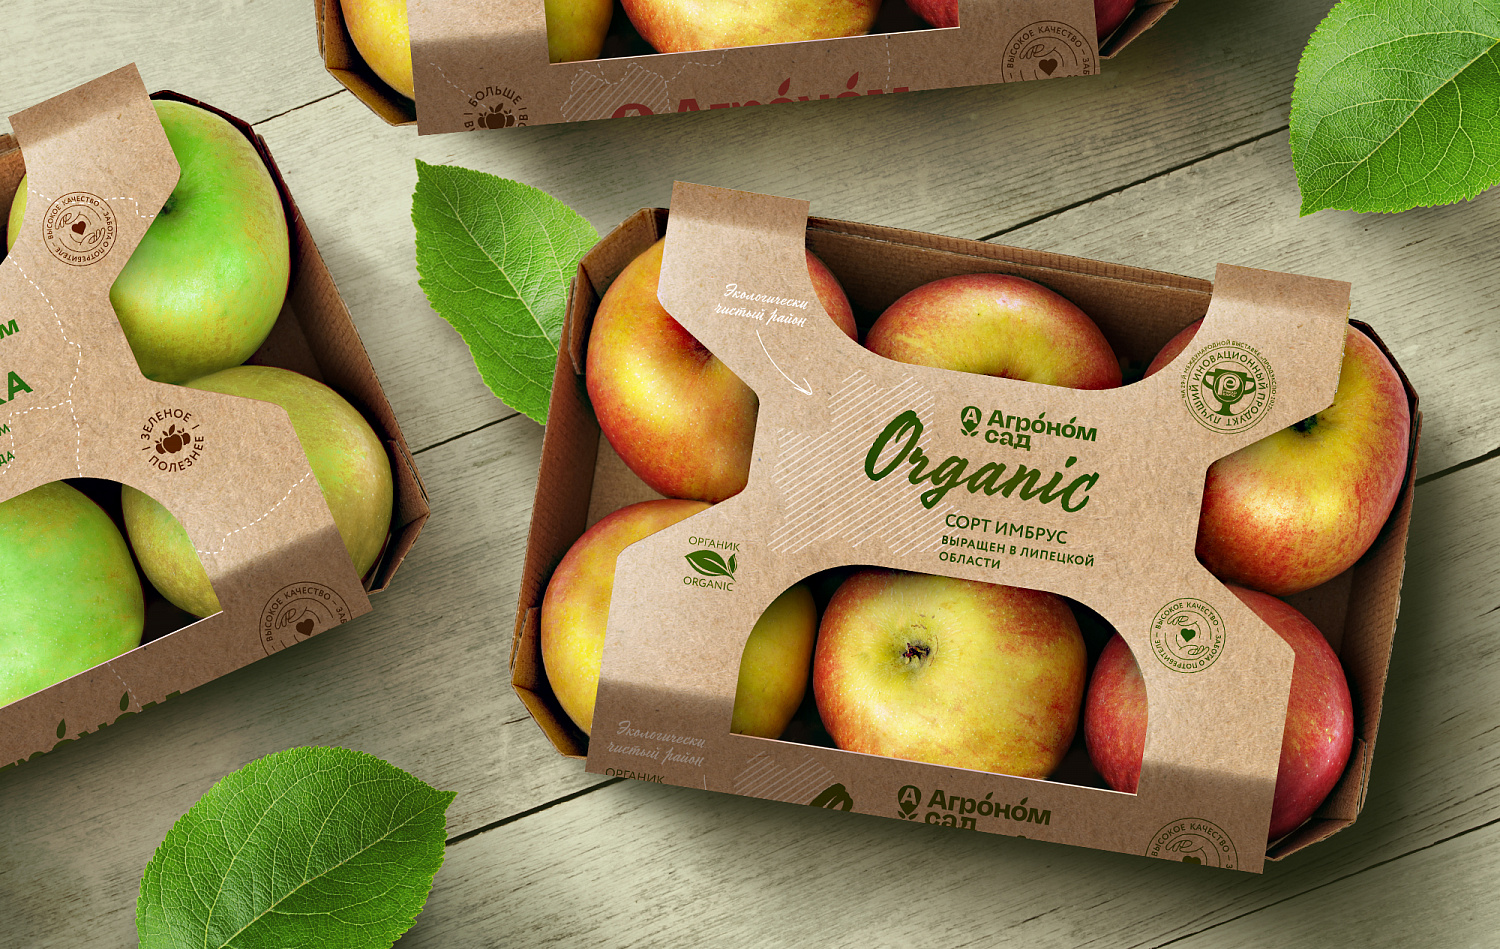 Агроном-сад: Дизайн упаковки для товаров агропромышленной компании - Портфолио Depot